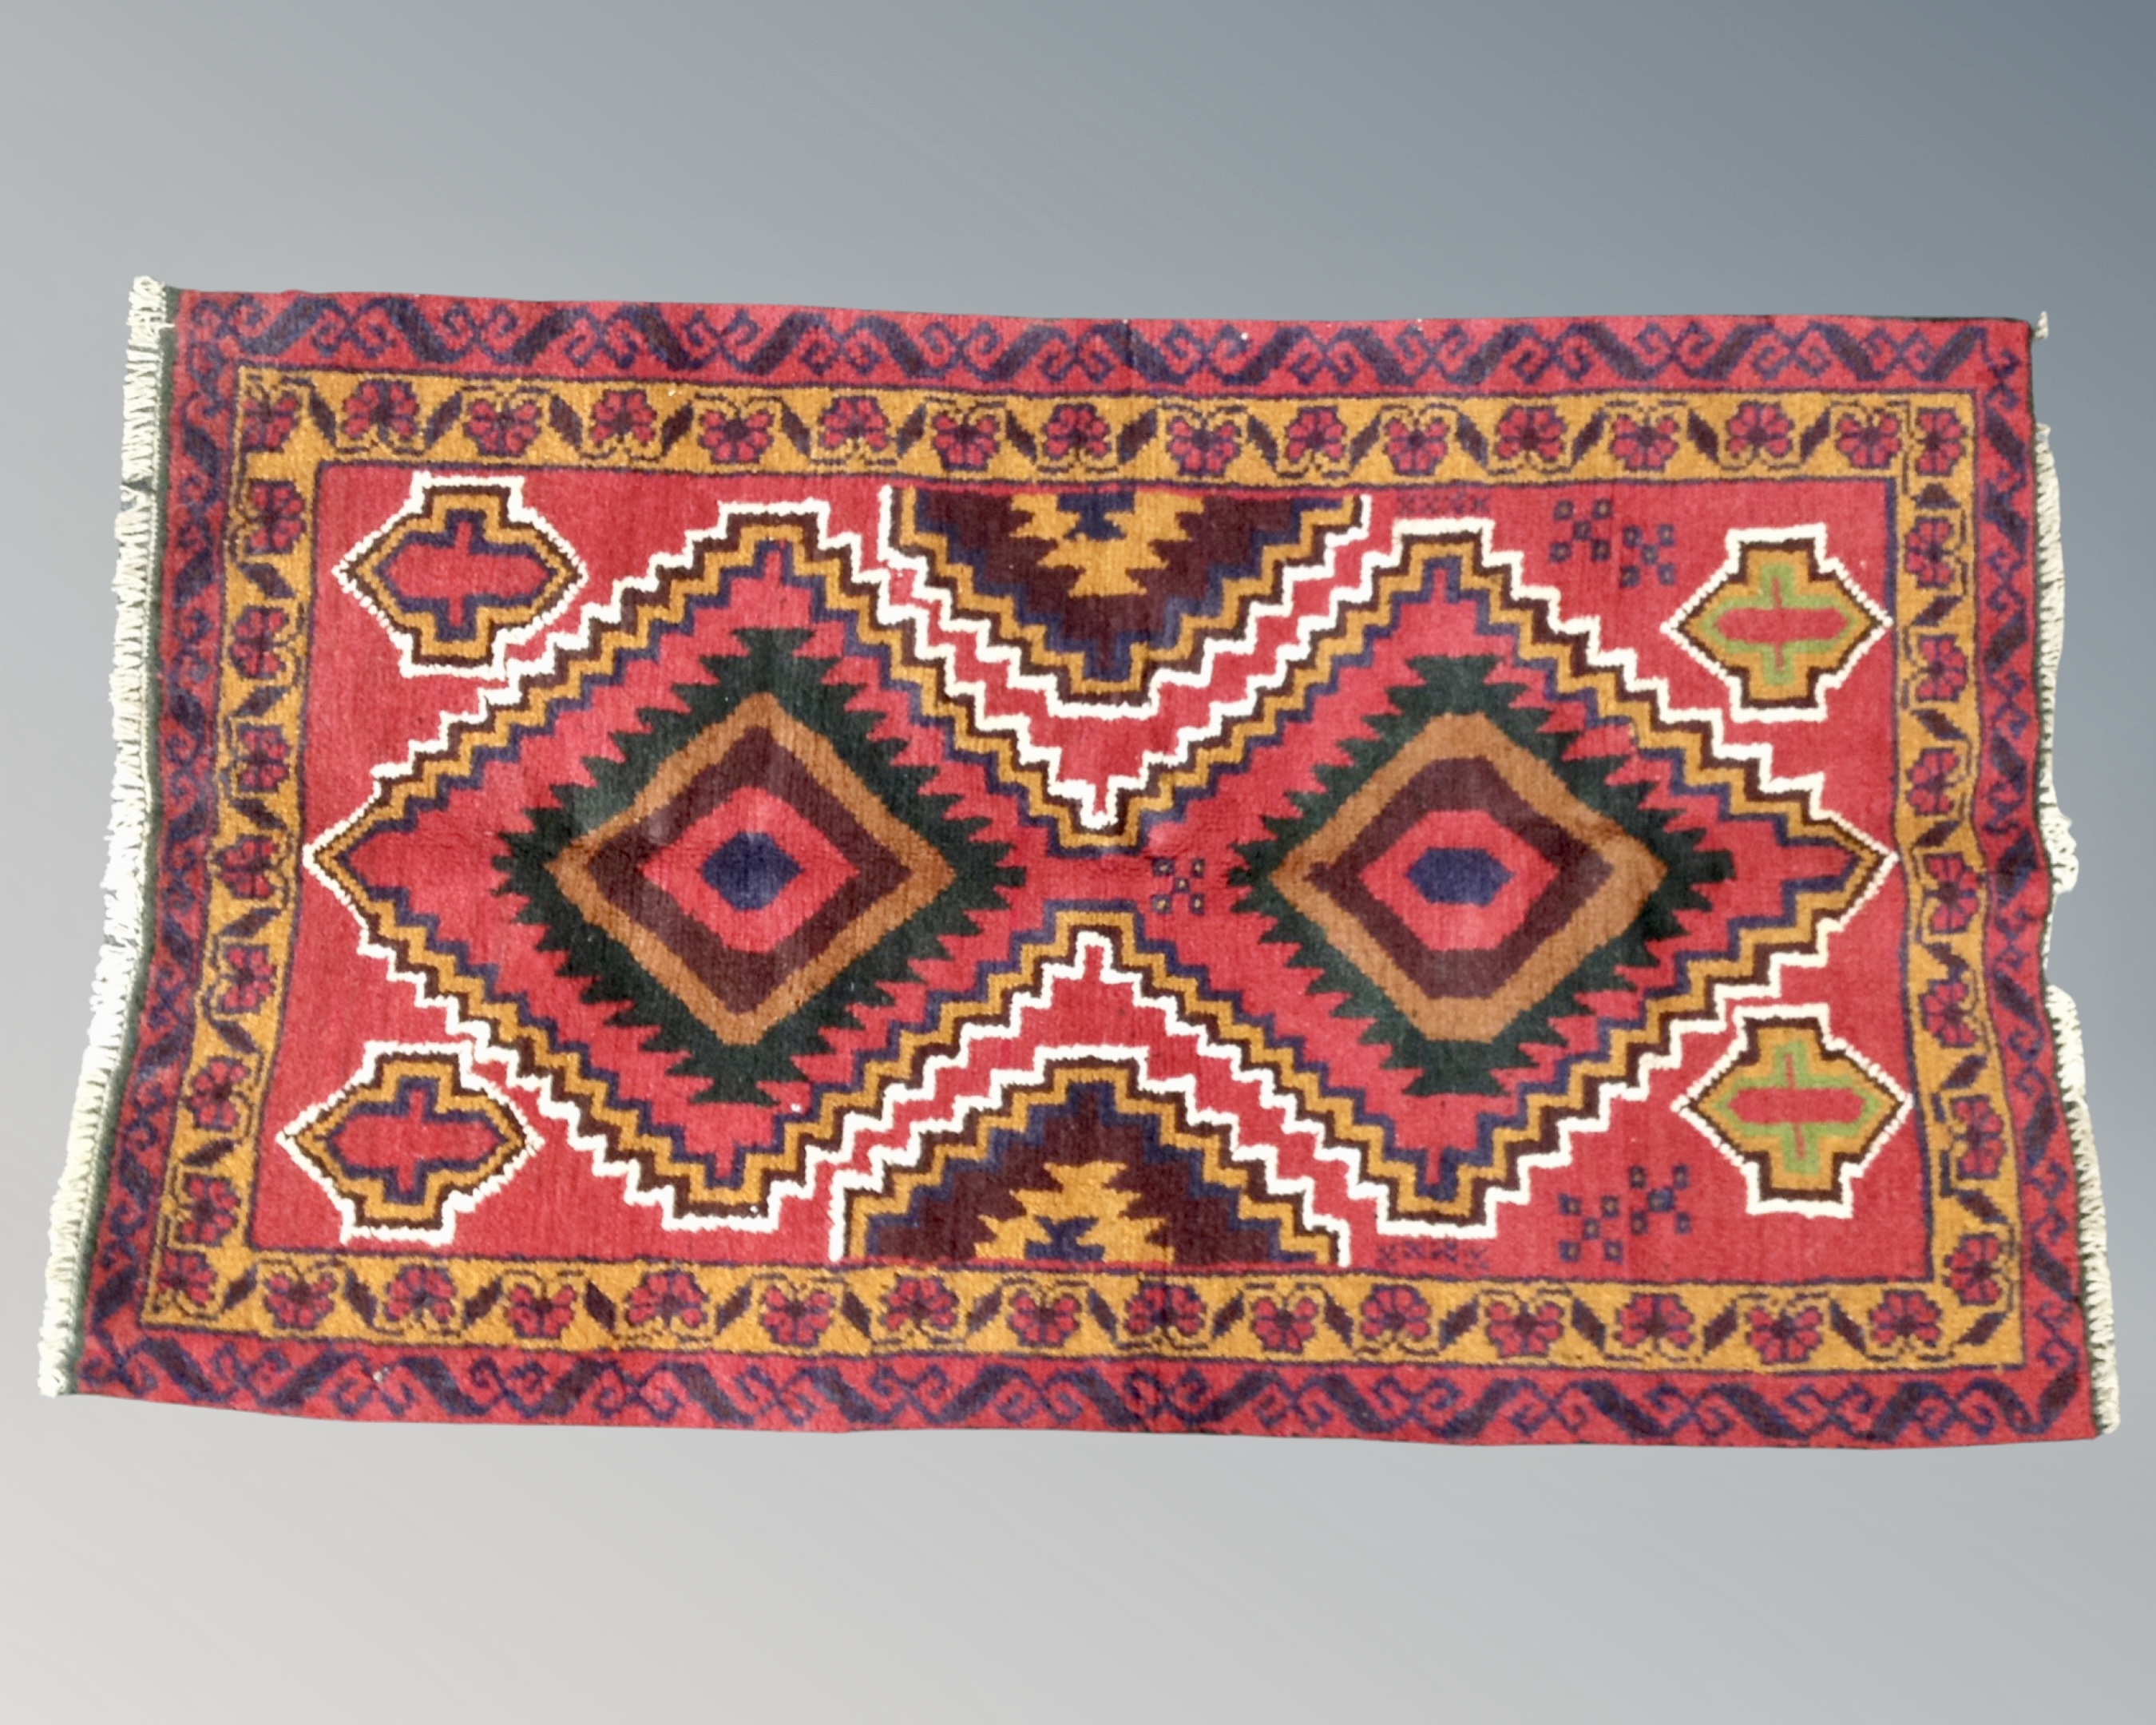 A Baluchi rug 188cm by 77cm